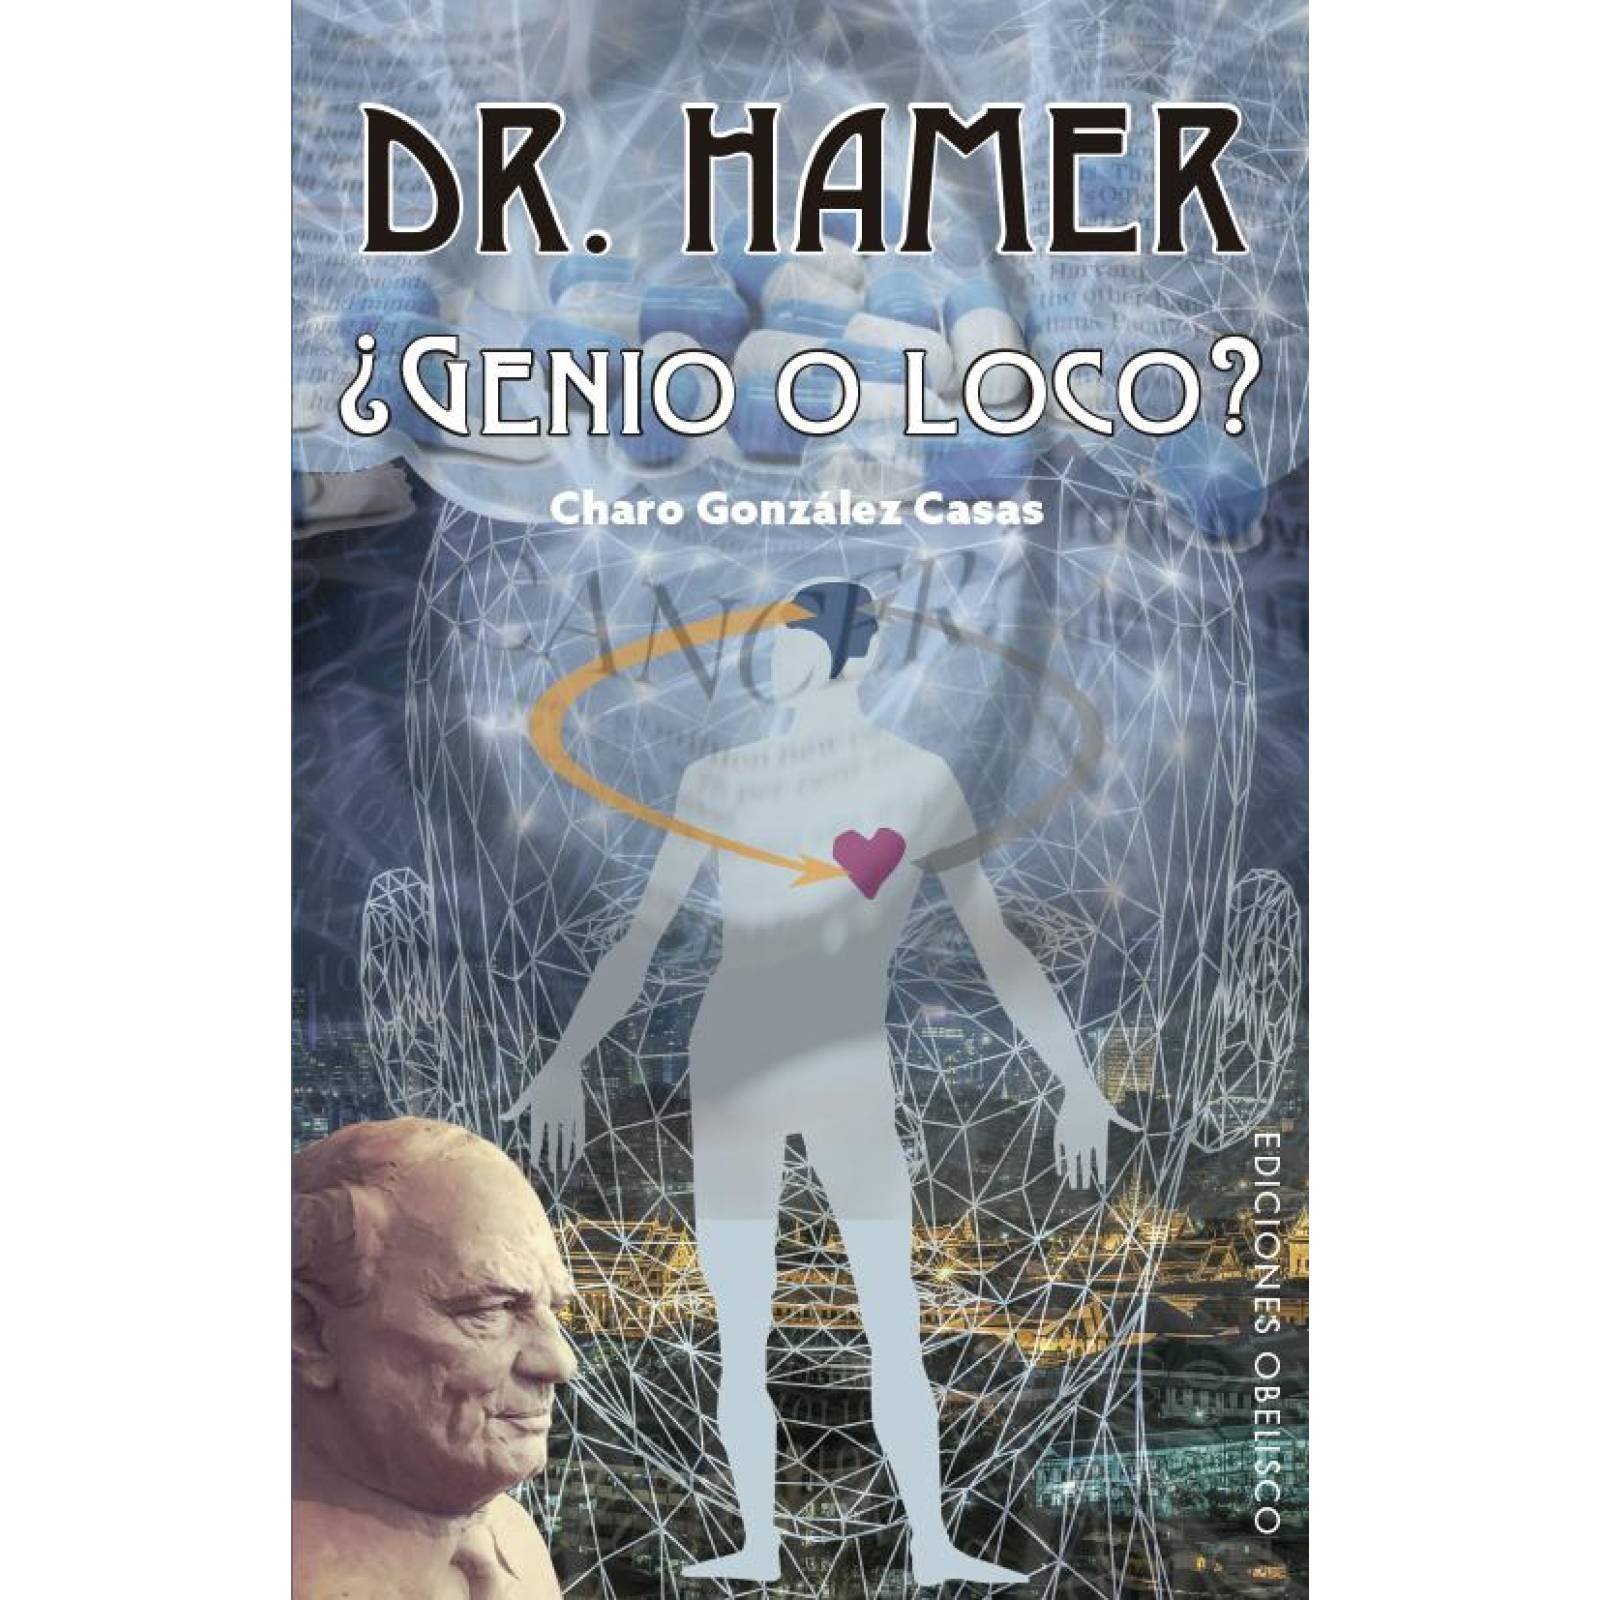 Dr. Hamer 